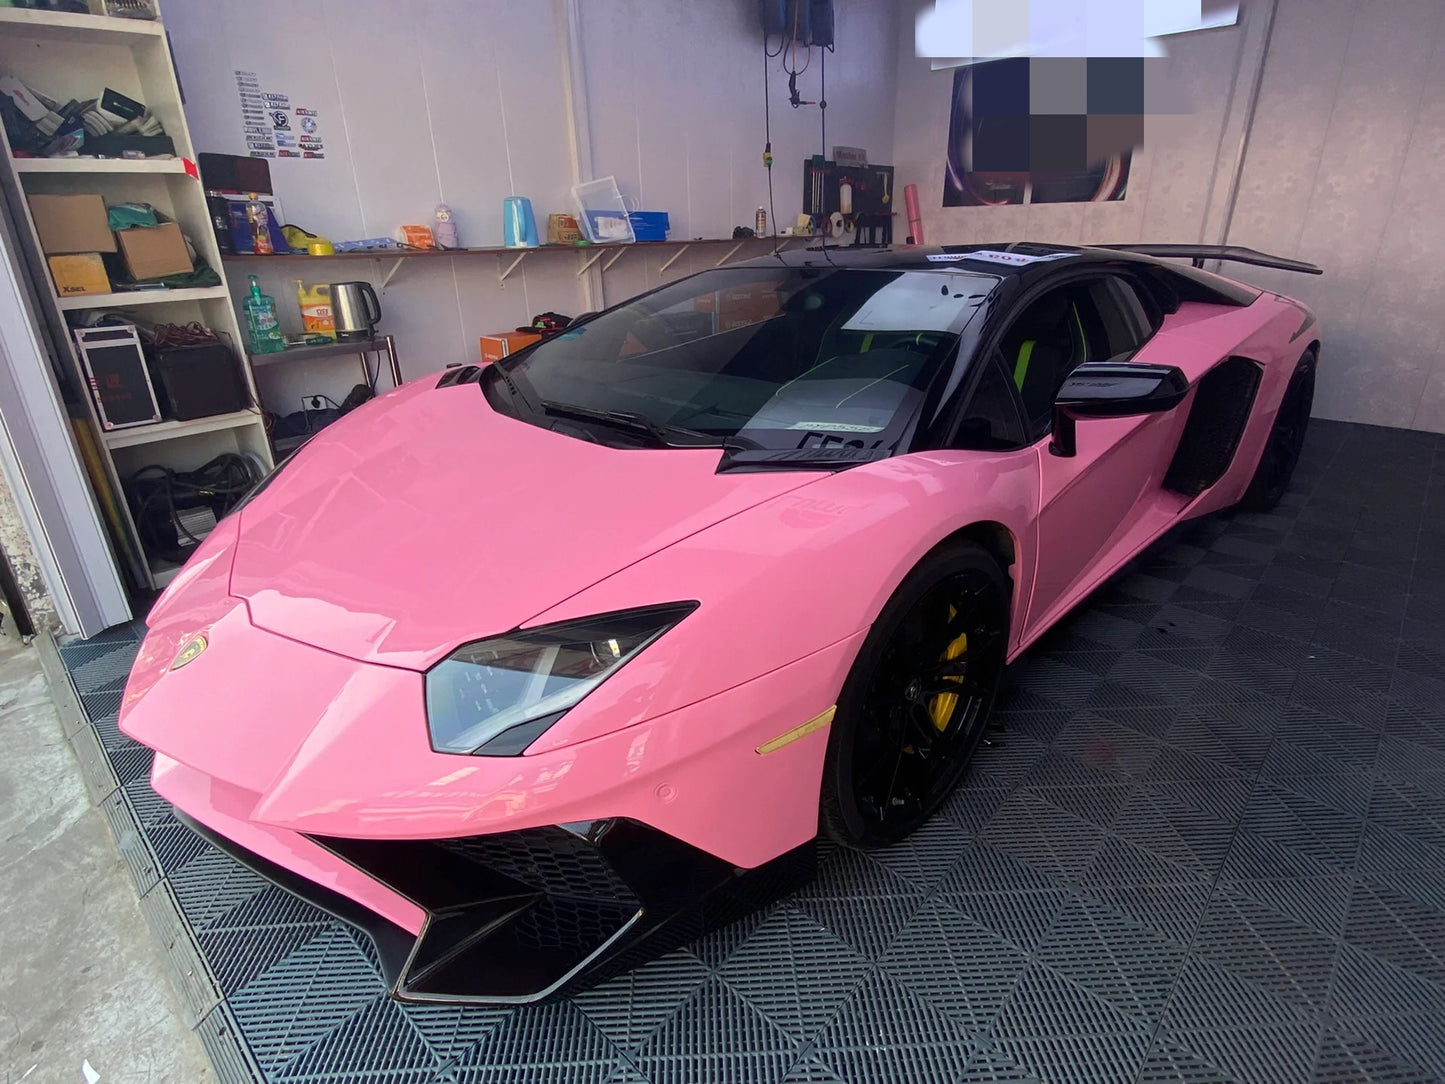 Super Gloss Light Pink Car Wrap